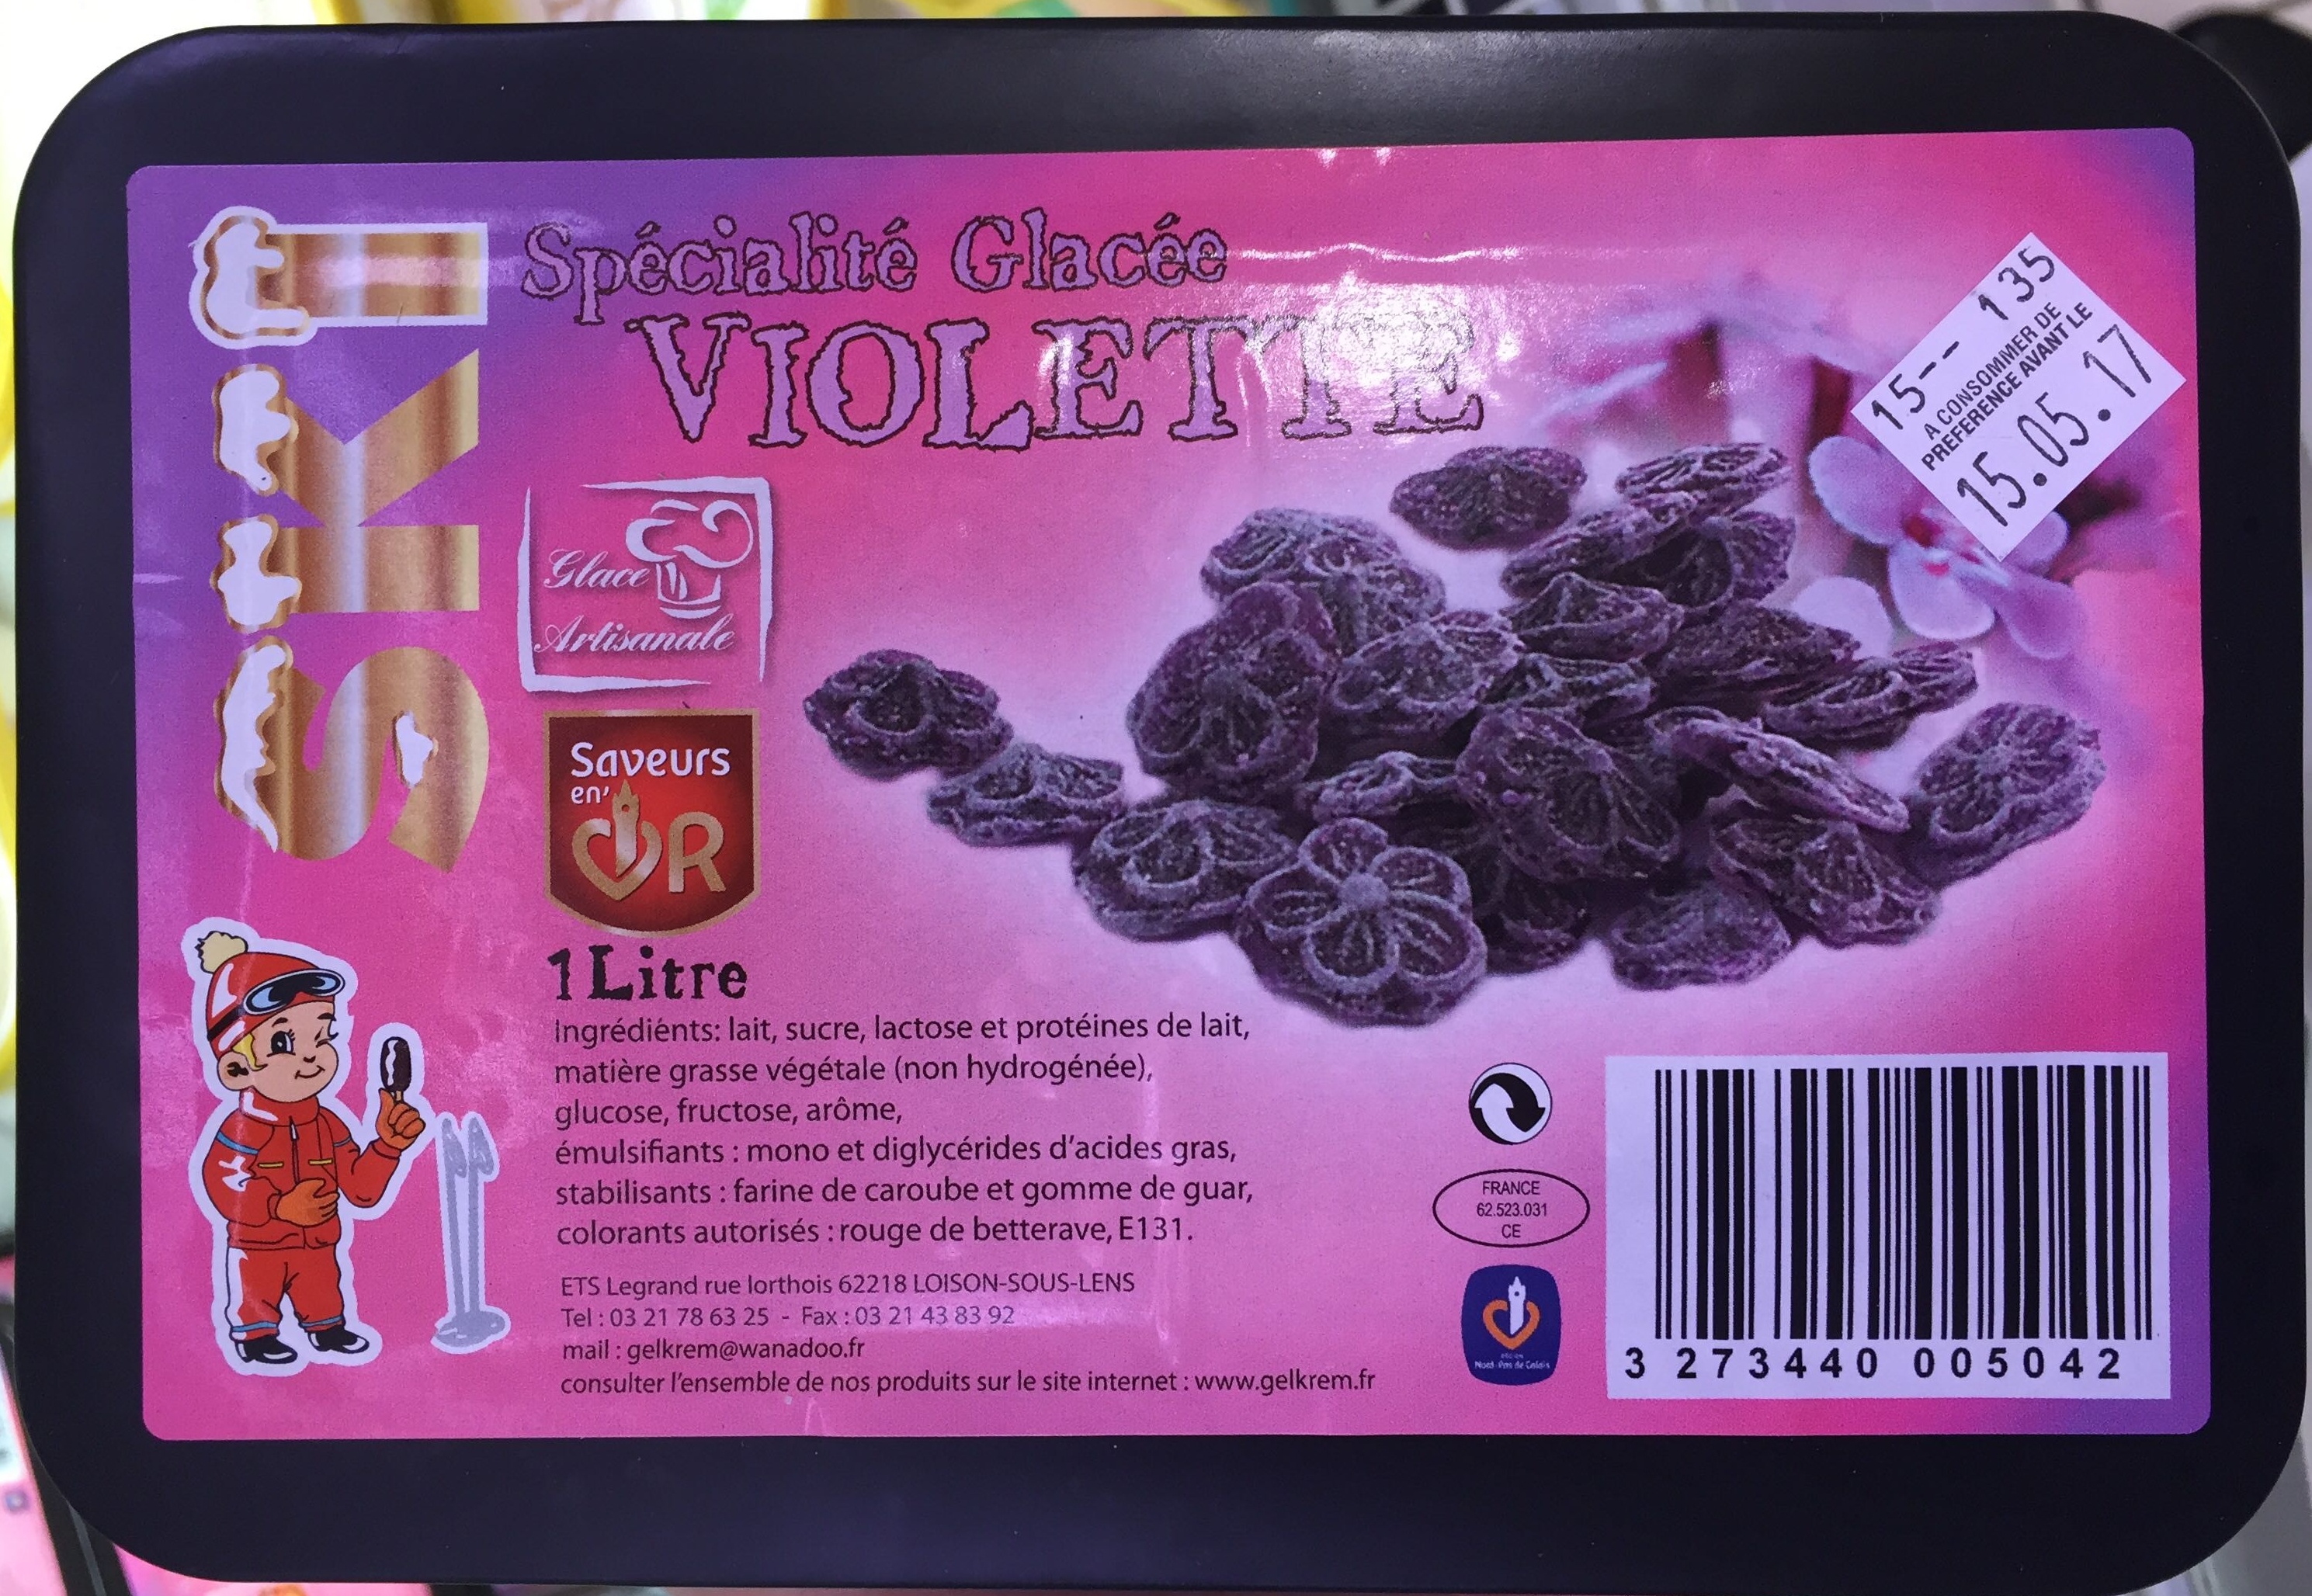 Spécialité glacée violette - Product - fr